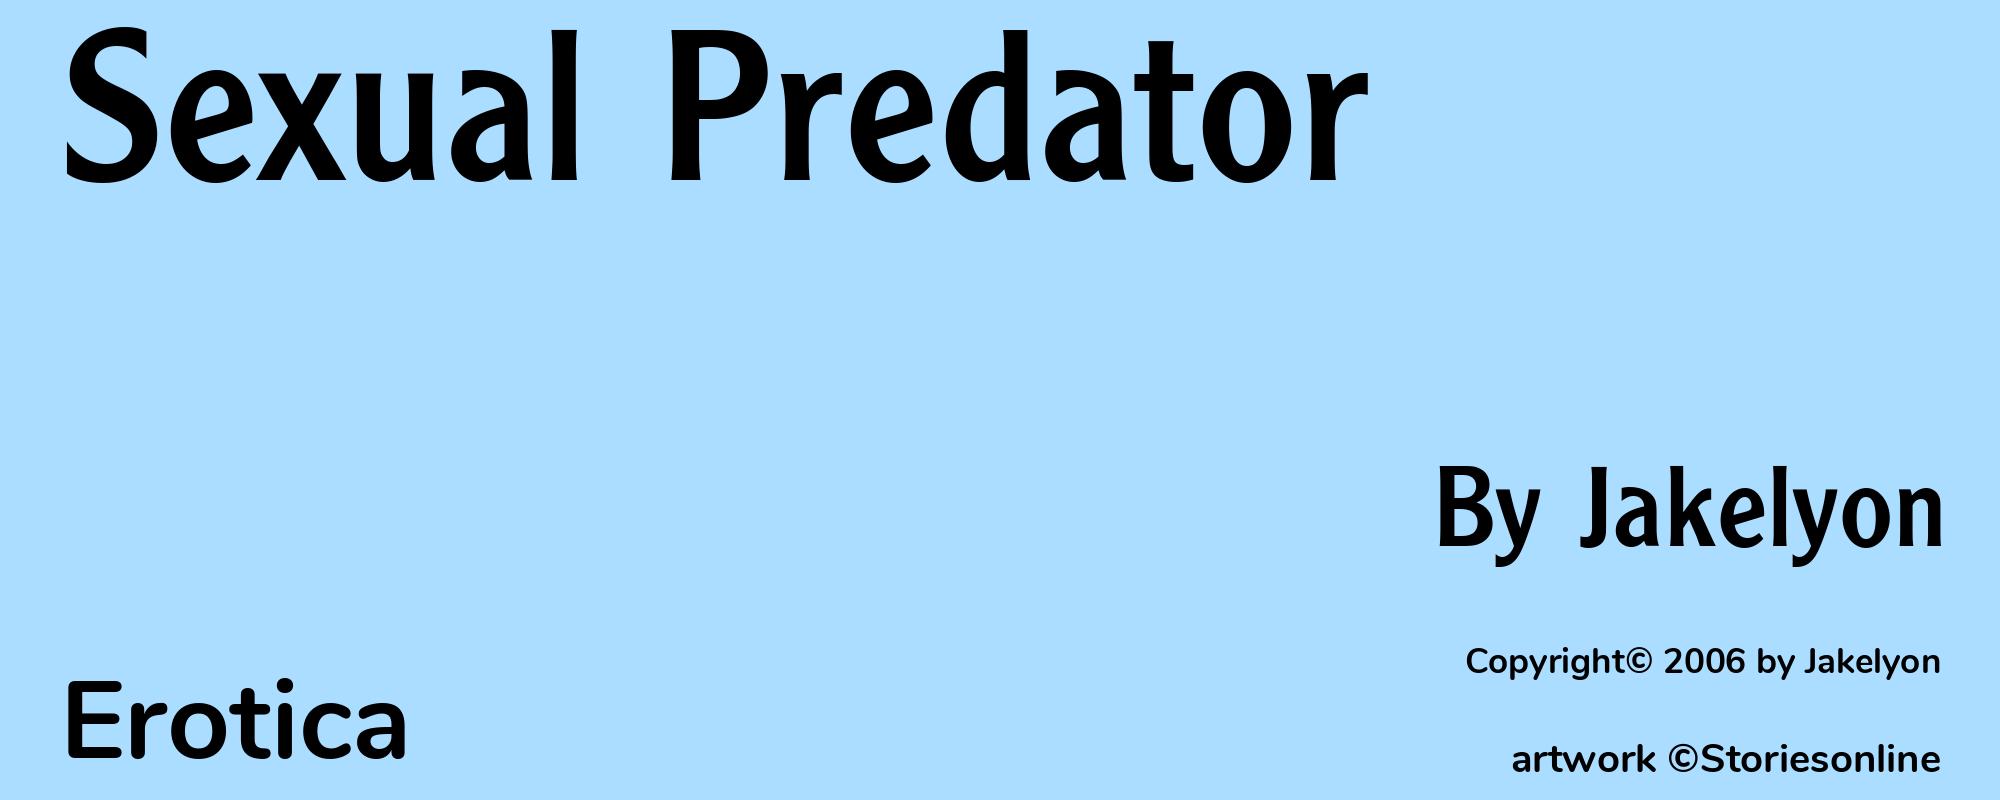 Sexual Predator - Cover